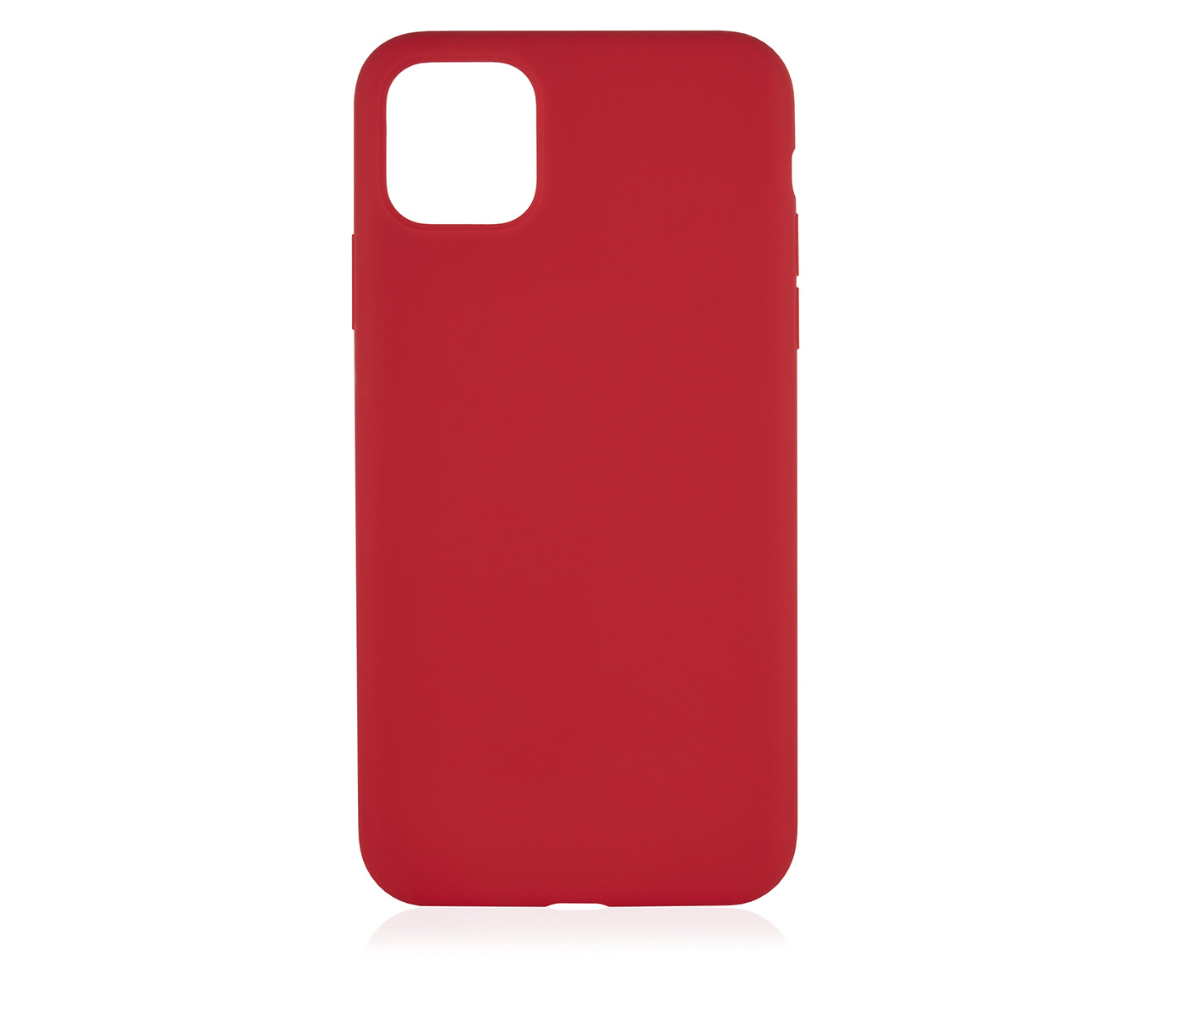 Чехол защитный vlp Silicone Сase для iPhone 11 Pro Max, красный